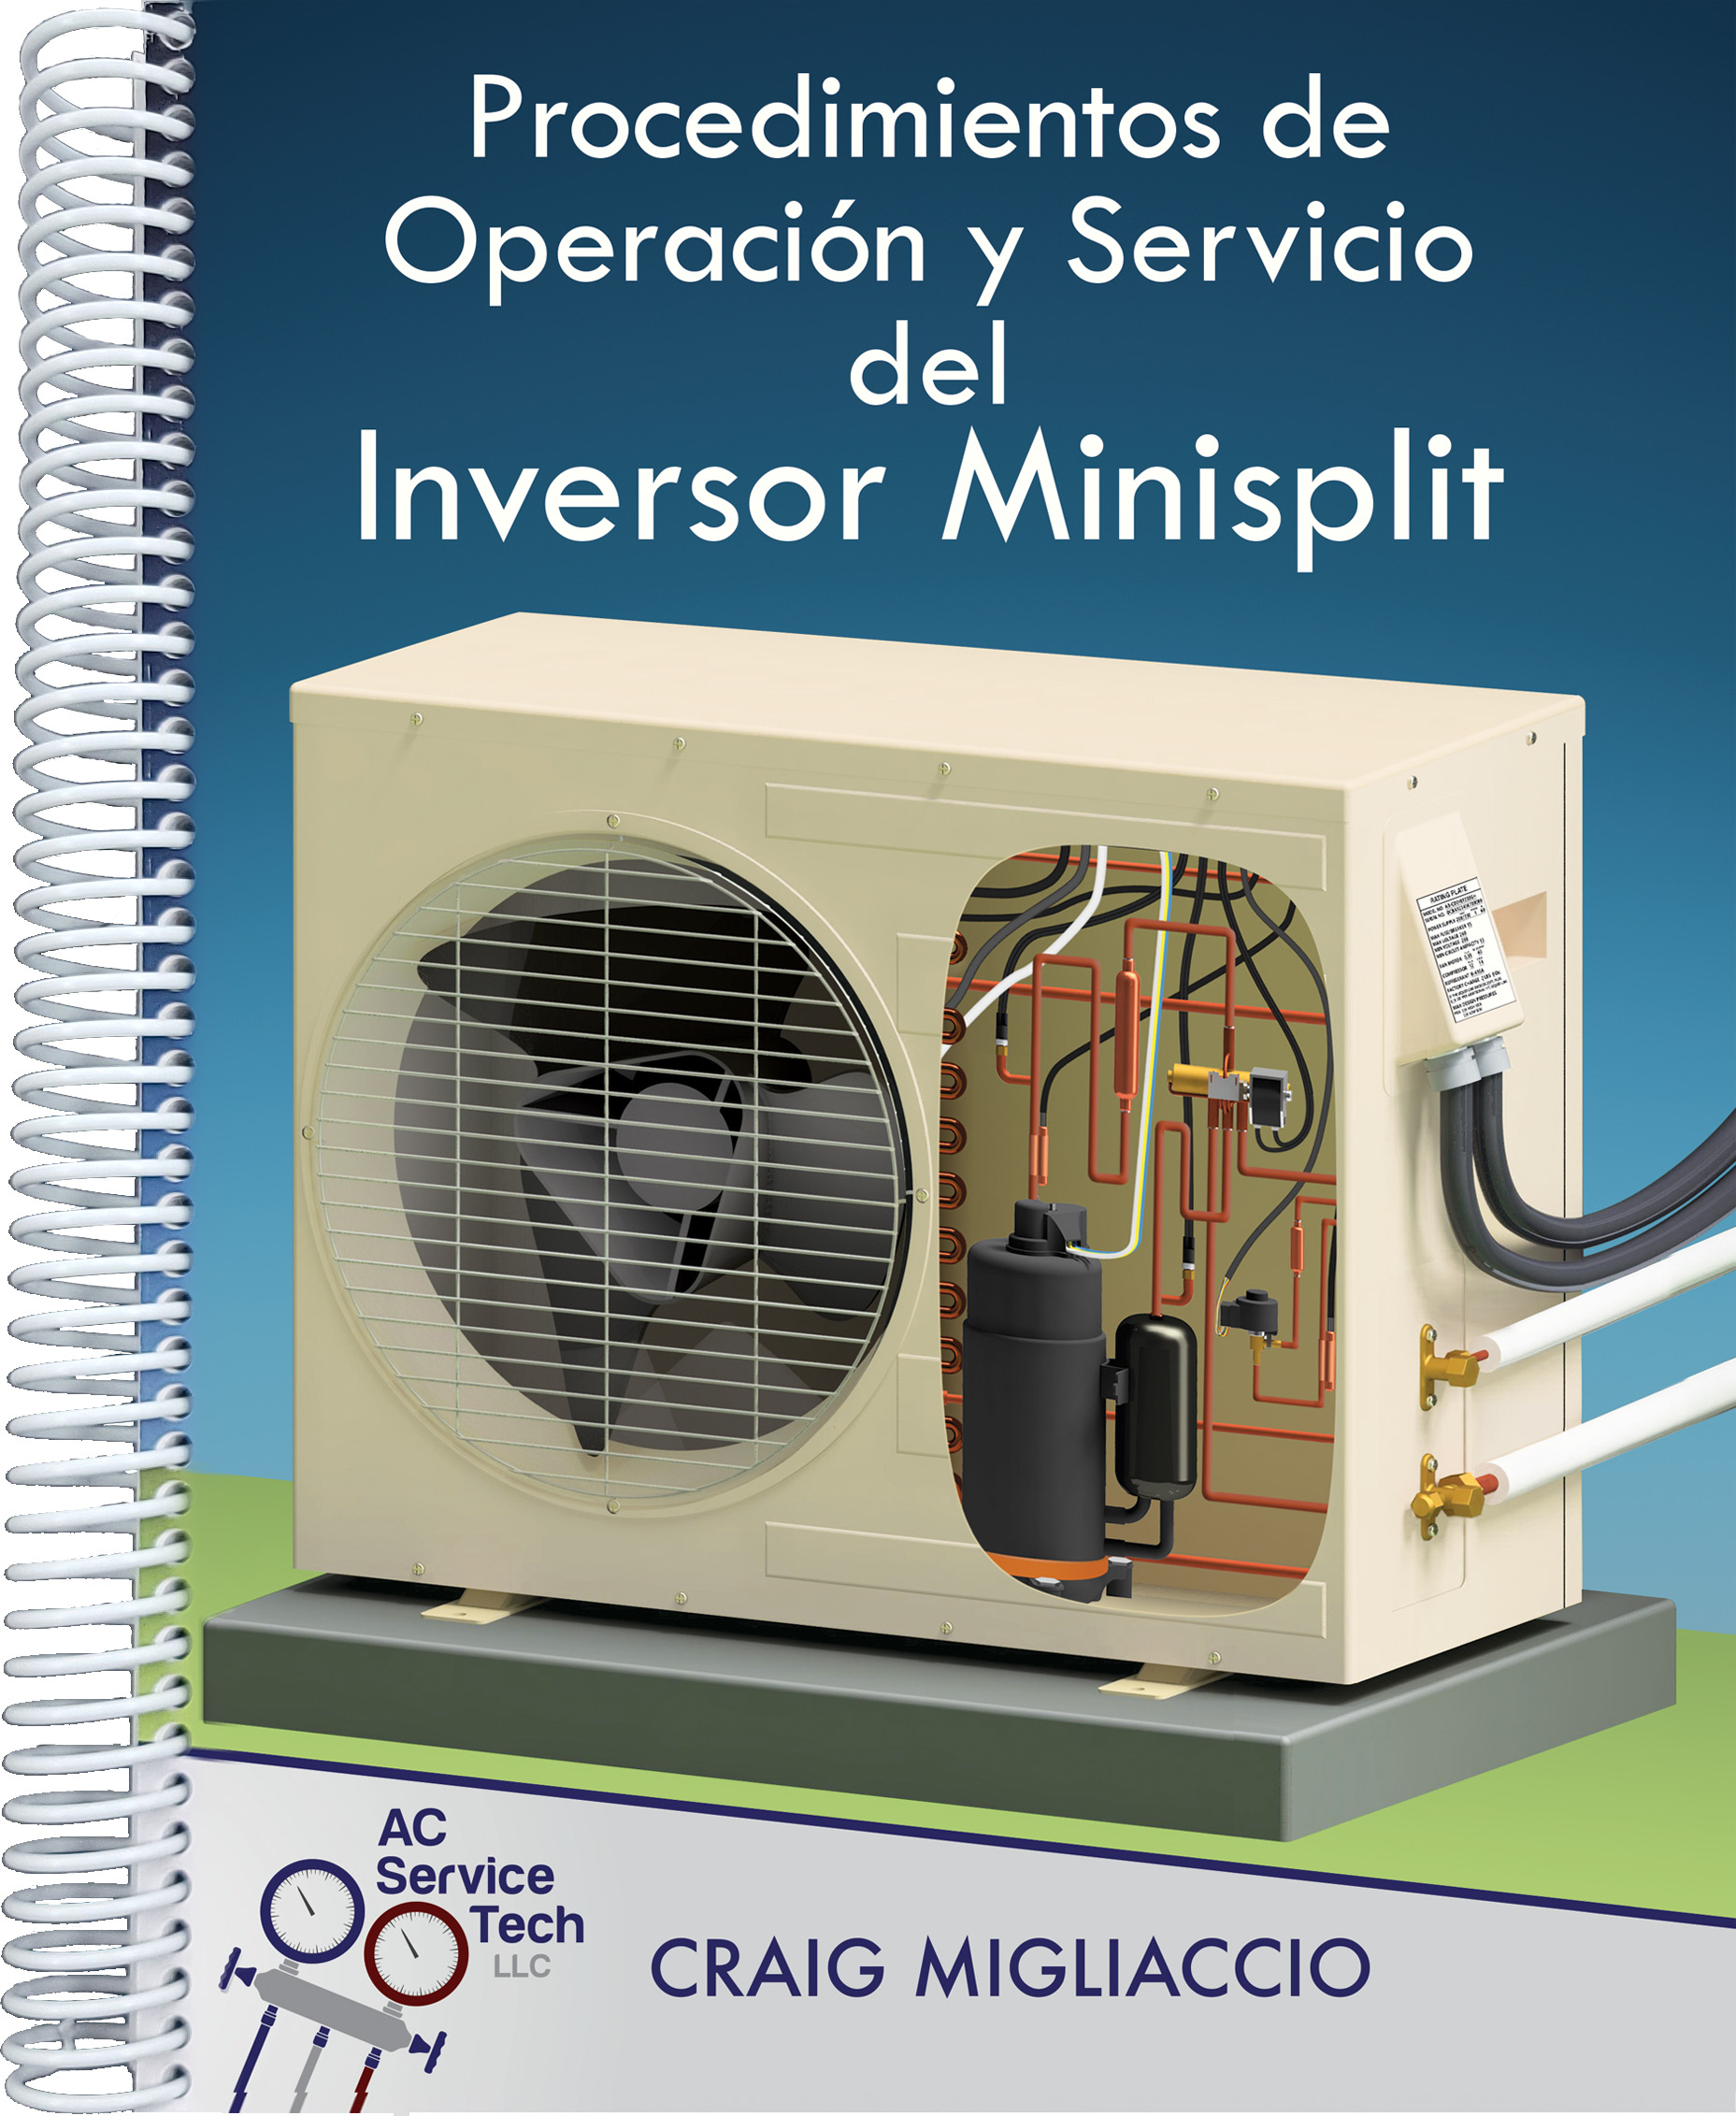 Procedimientos de Operación y Servicio del Inversor Minisplit